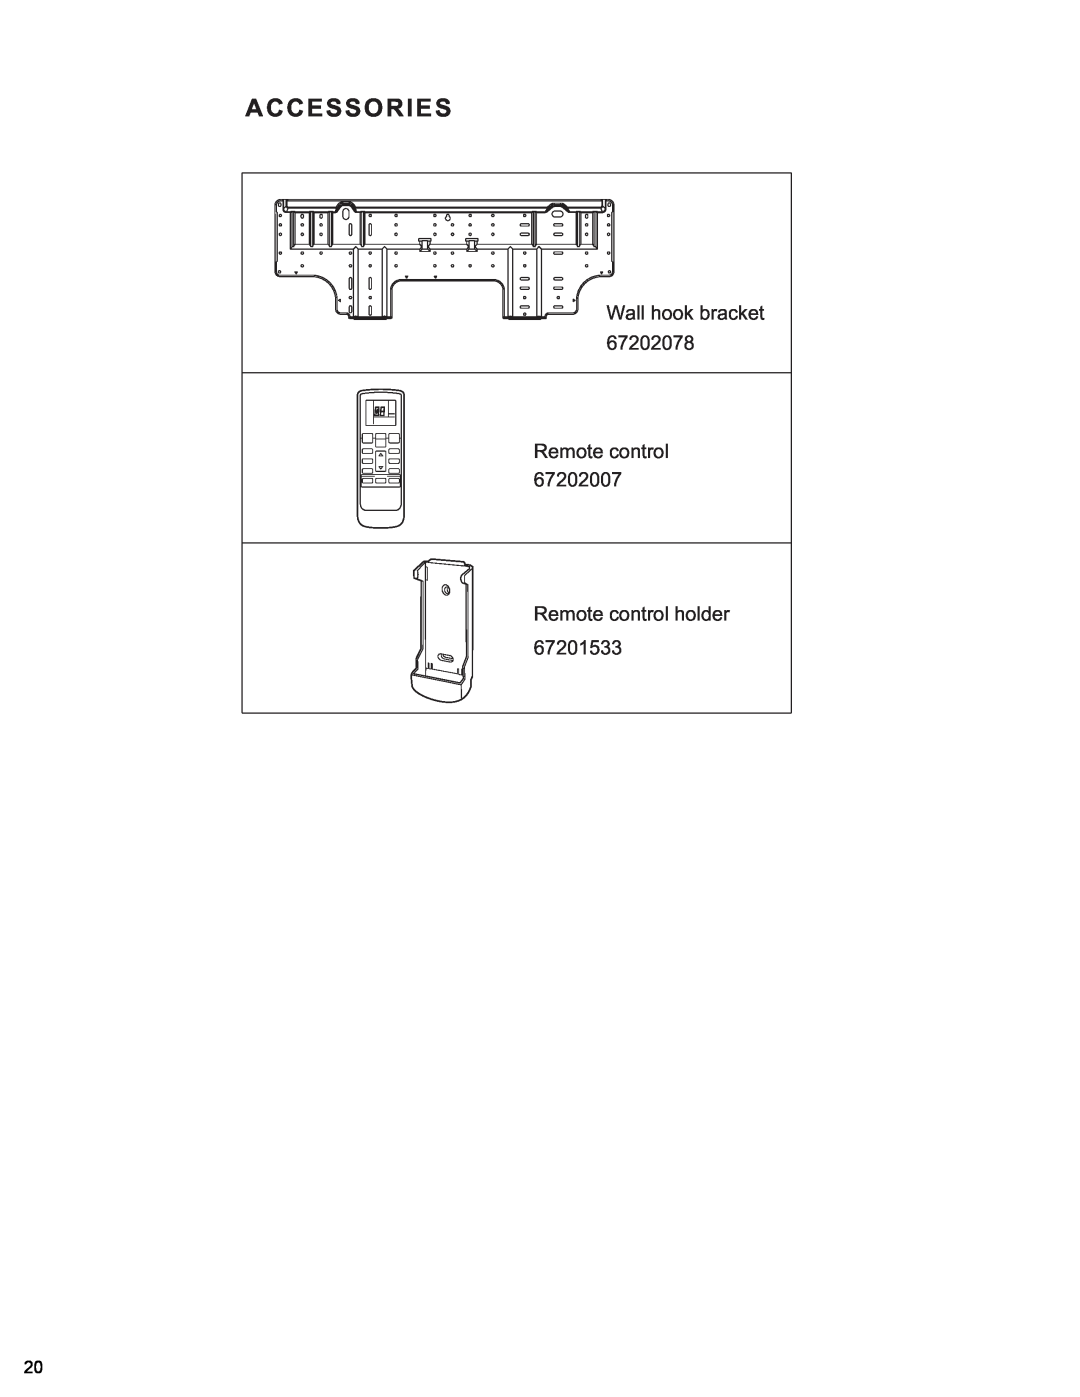 Friedrich MR12Y3H, MR09Y3H manual Accessories, Wall hook bracket Remote control, Remote control holder 